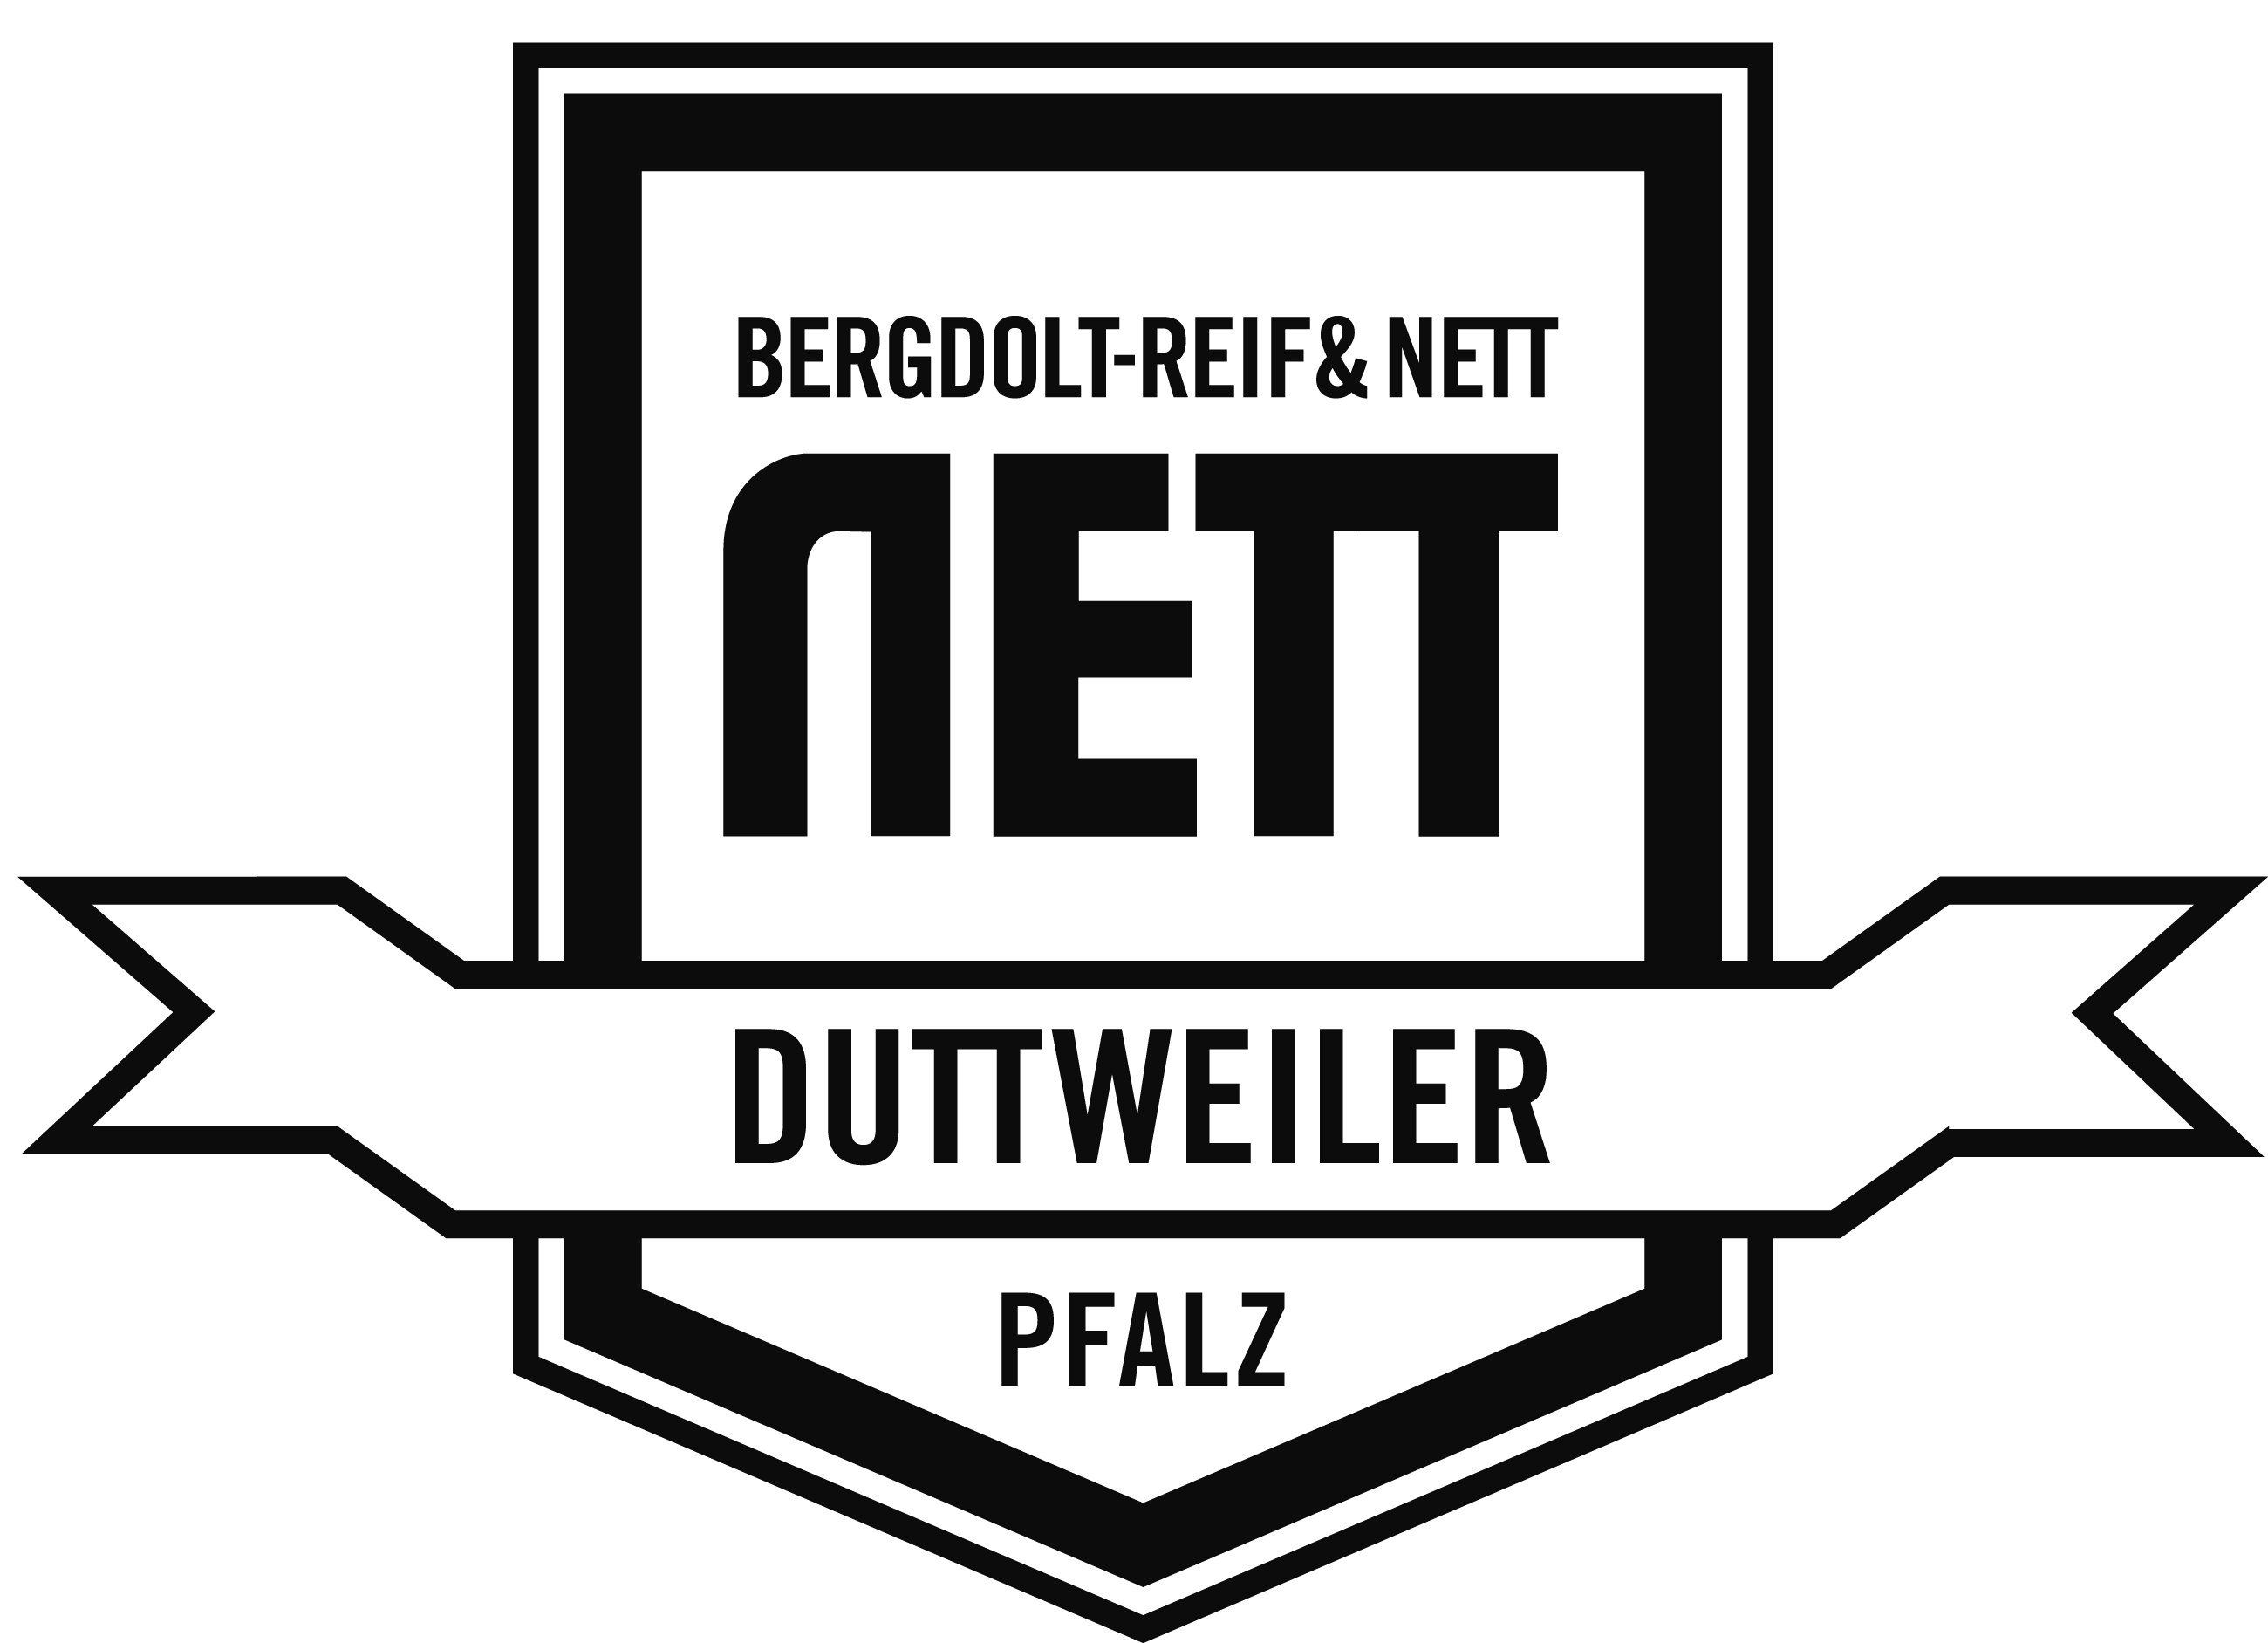 Weingut Bergdolt-Reif & Nett GmbH & Co. KG, 67435 Duttweiler, D